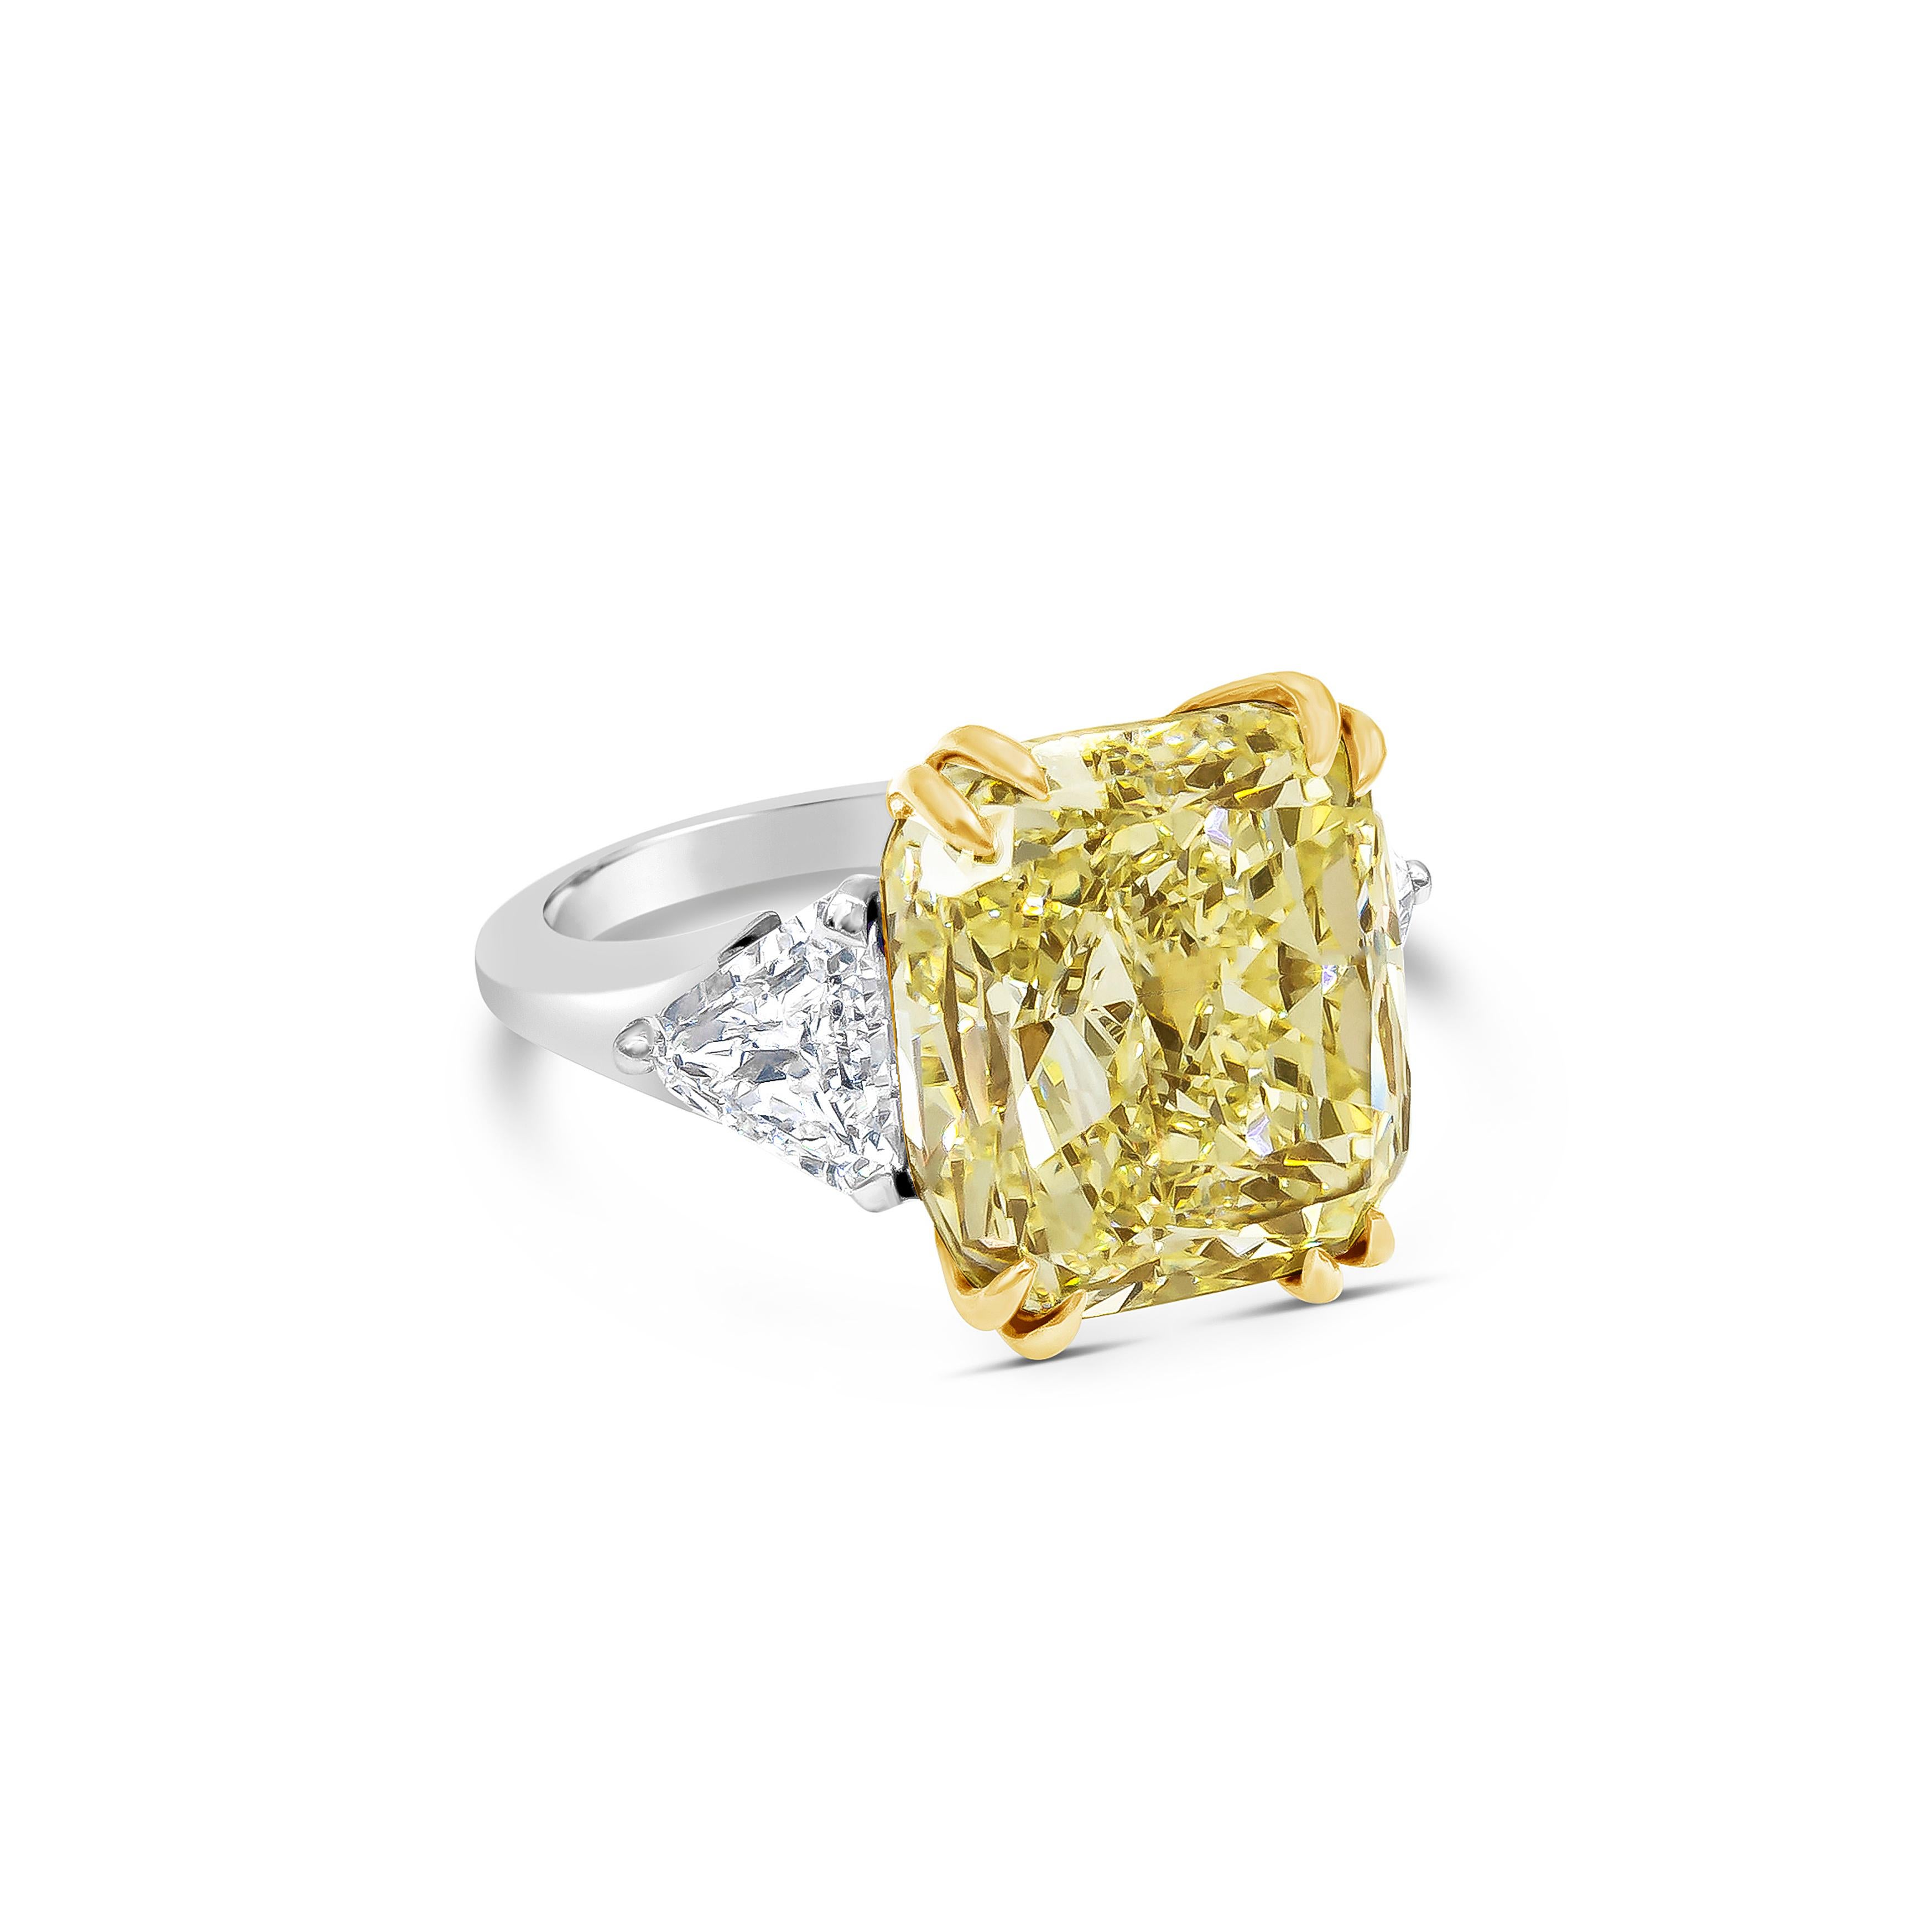 Bague de fiançailles haut de gamme bien travaillée mettant en valeur un diamant de taille coussin de 12,15 carats certifié par le GIA, de couleur jaune clair fantaisie, de pureté VS2, serti dans un panier en or jaune 18k à huit griffes. Accentué par